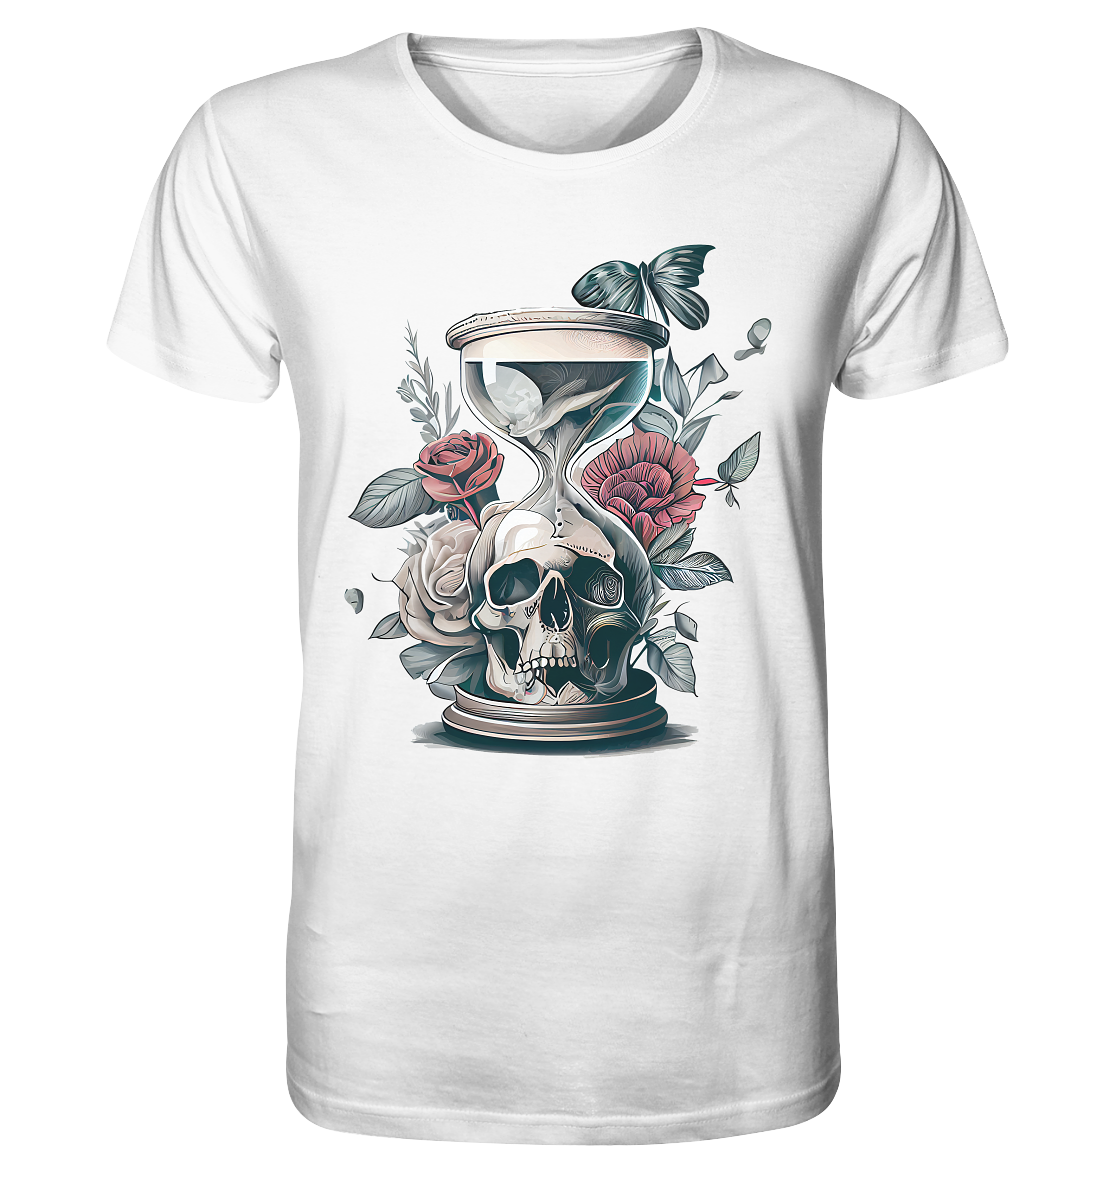 23-1074 Skull Sanduhr - Organic Shirt